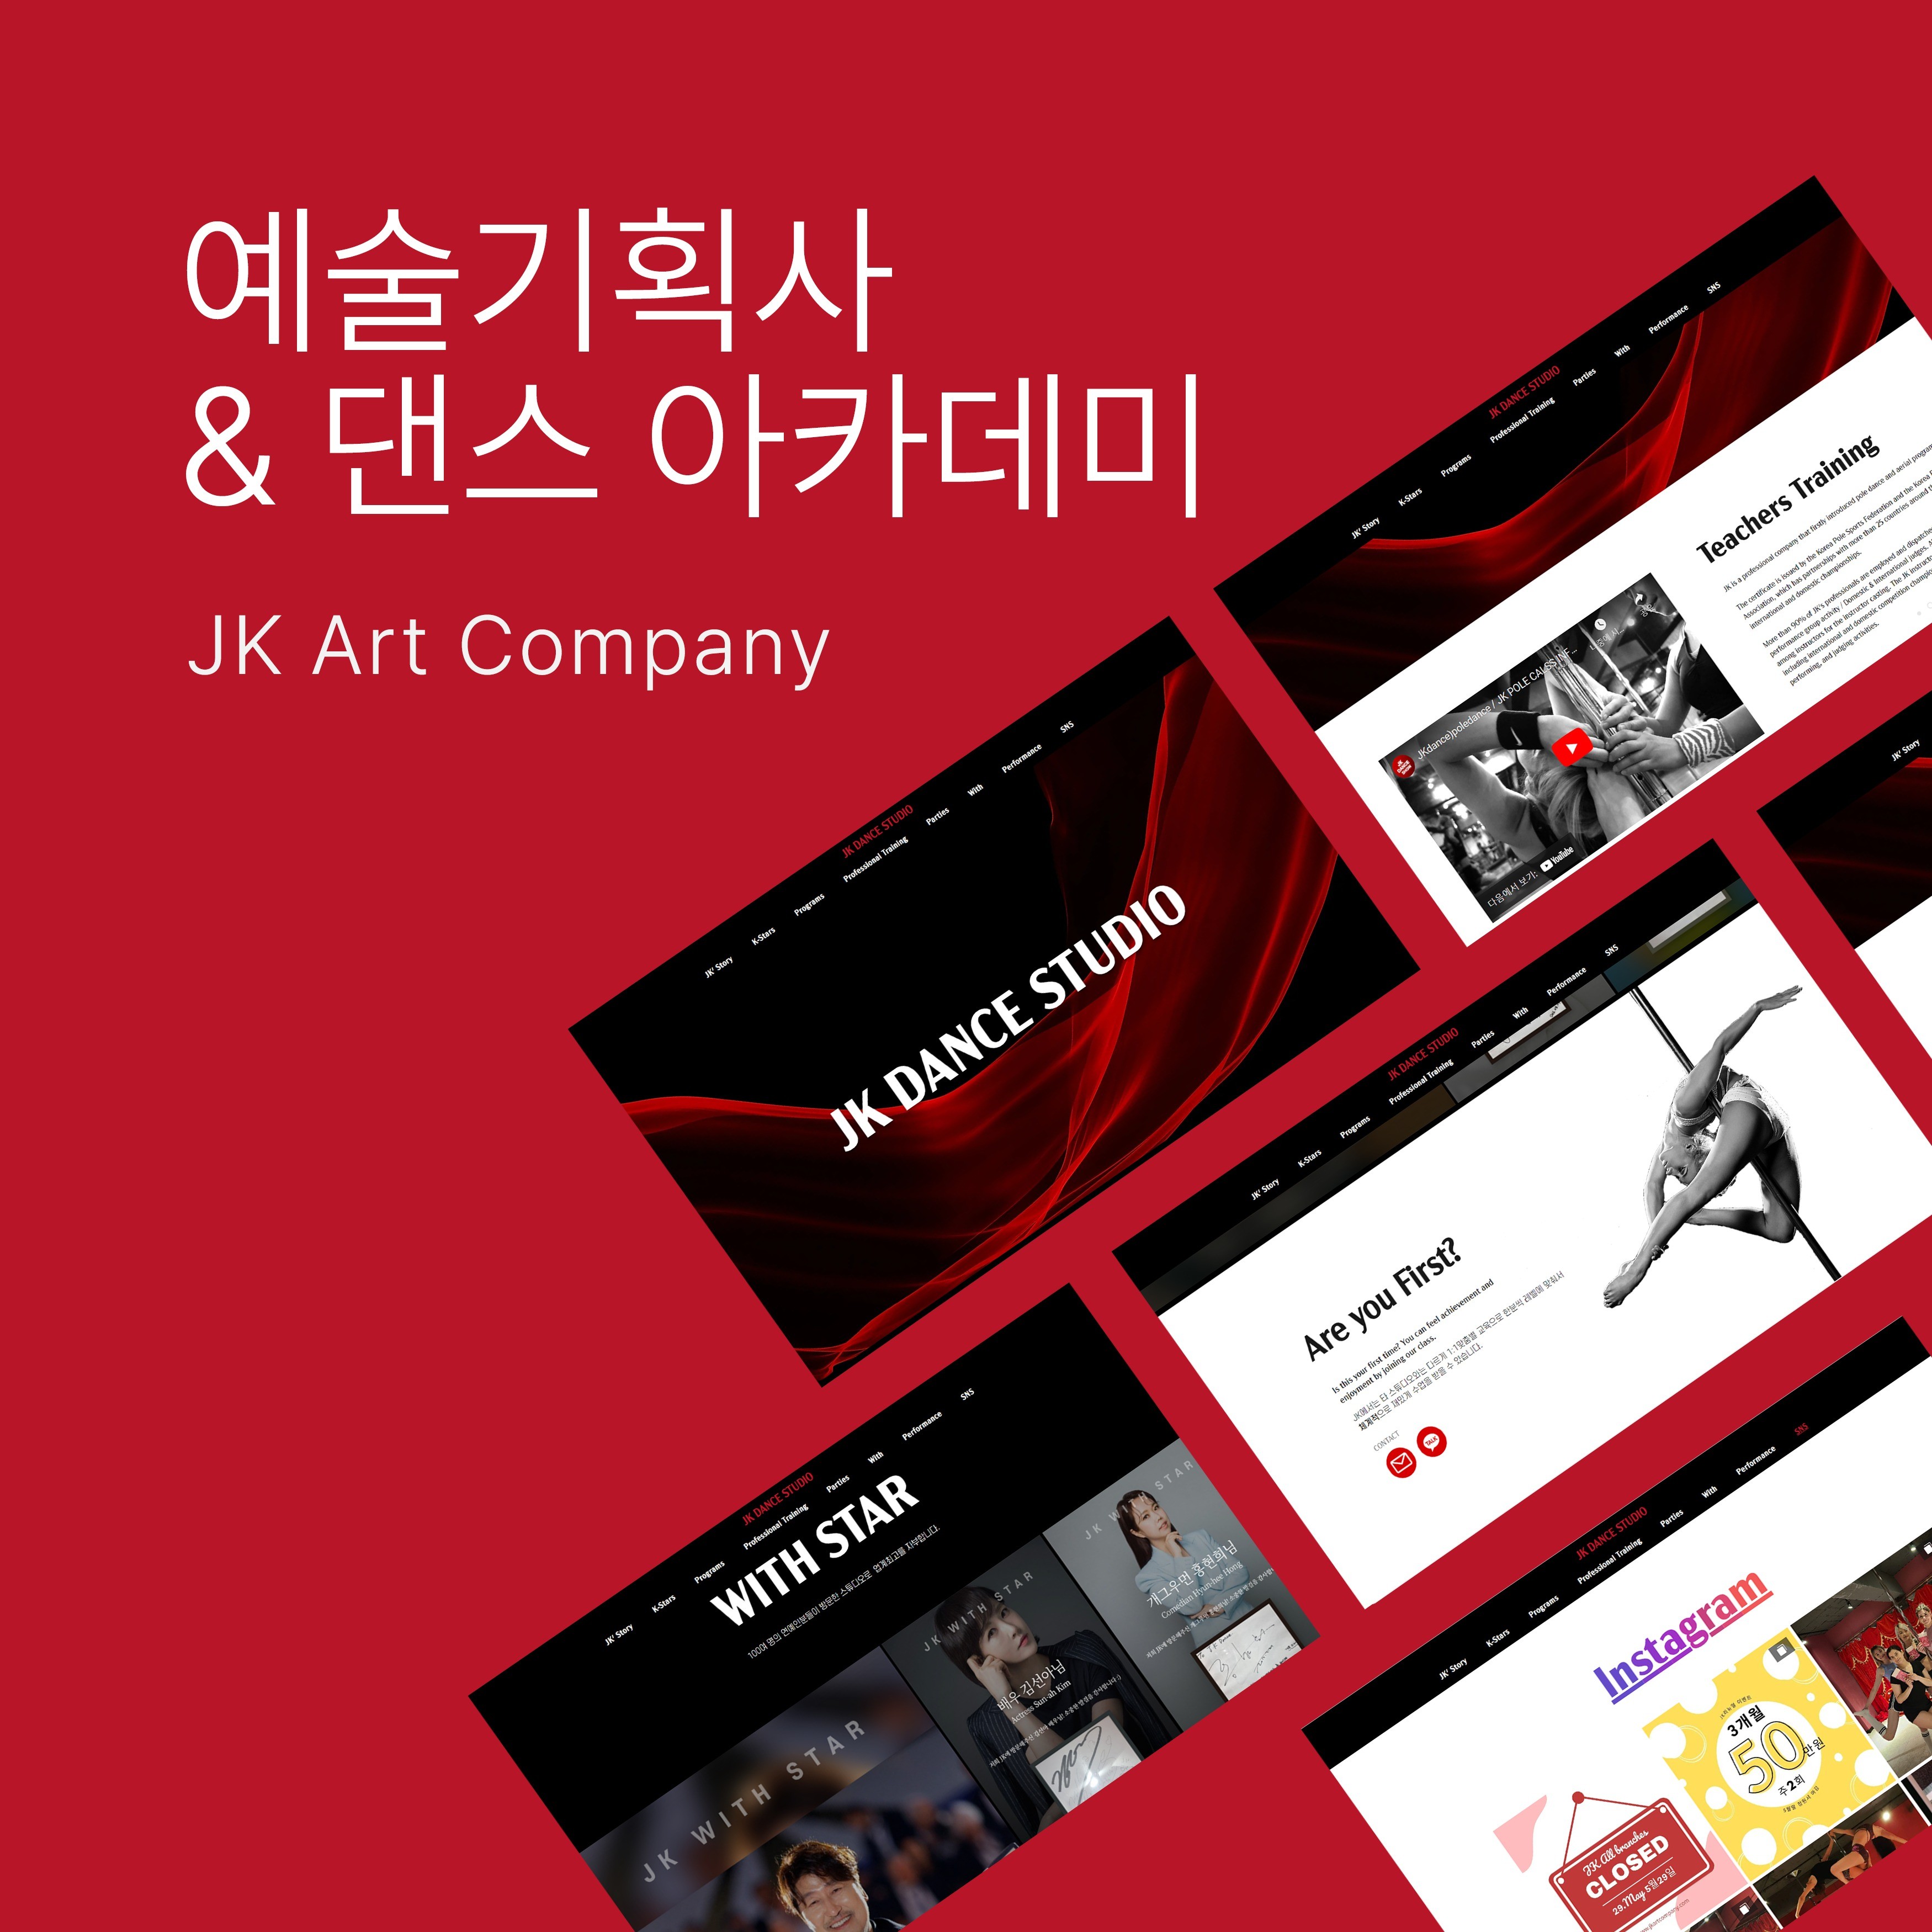 포트폴리오-JK Art Company의 홈페이지입니다.